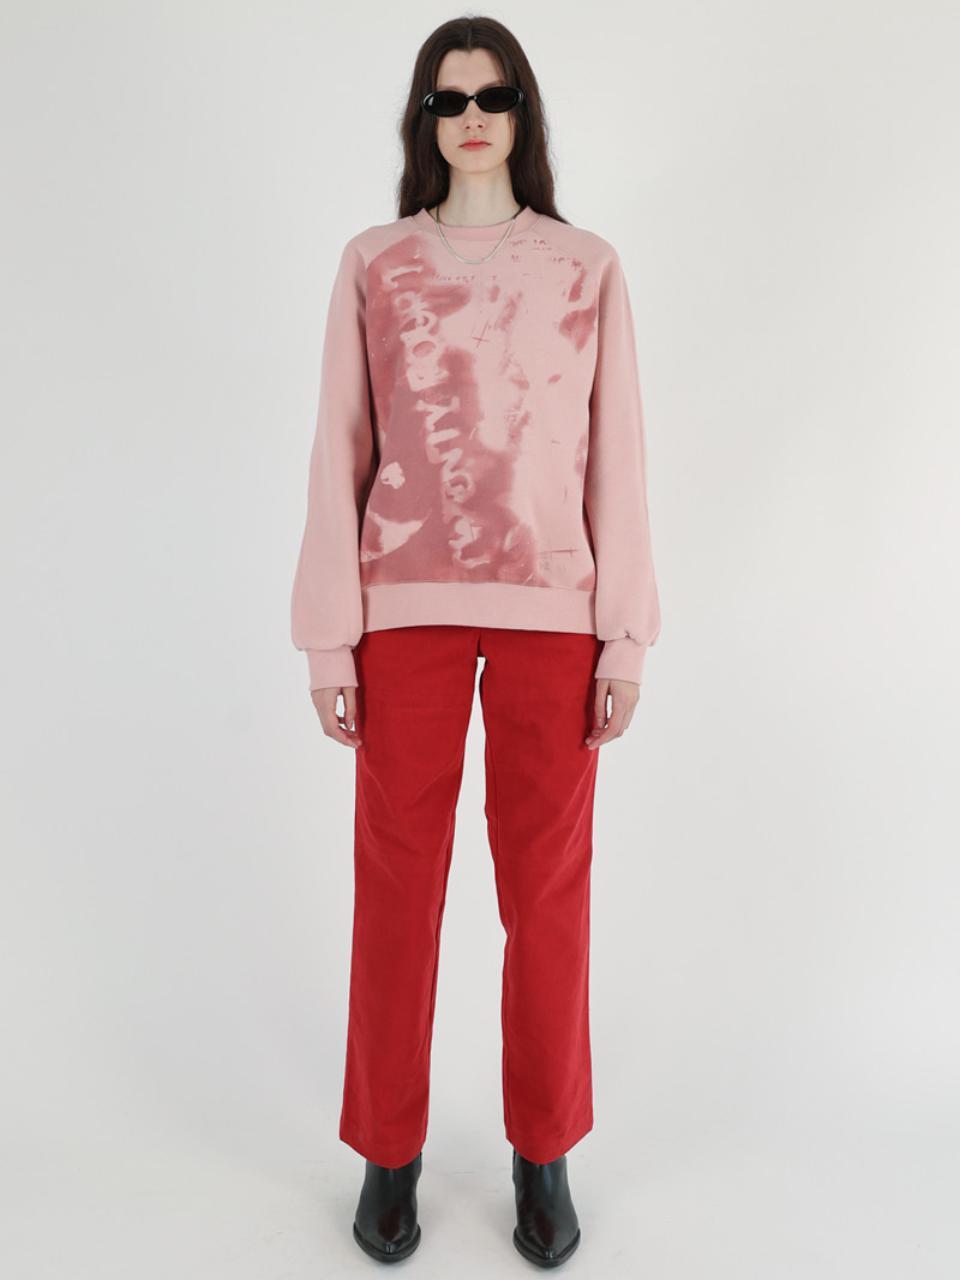 Yin Yang Sweatshirt, Indian Pink